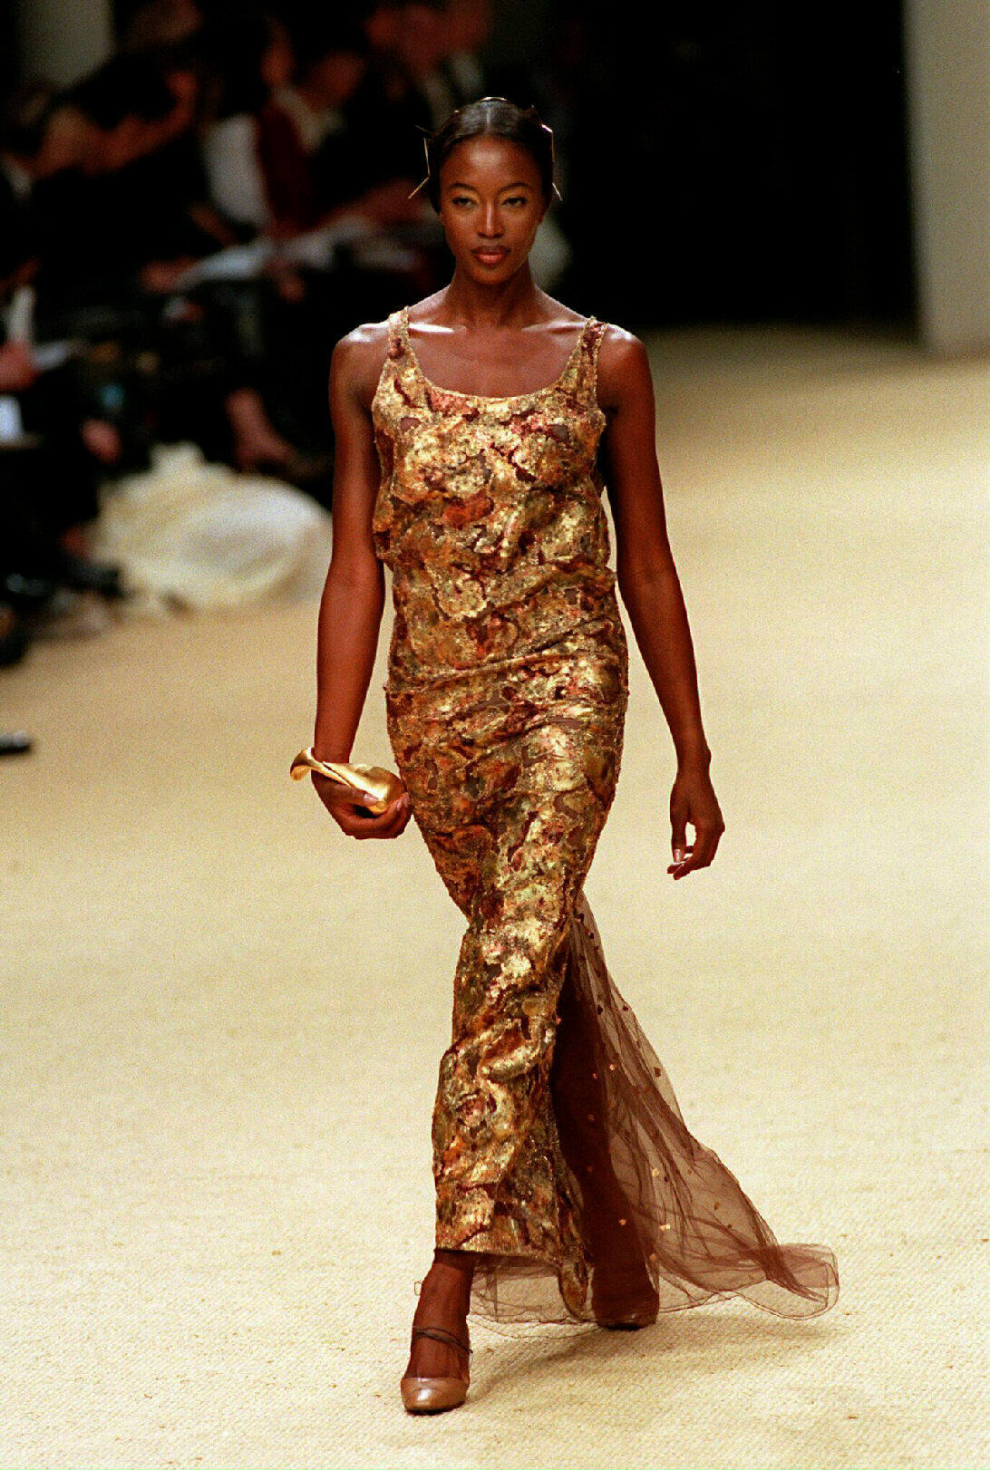 Trabajó con las mejores modelos. En la imagen, Naomi Campbell vistiendo un diseño para la primavera/verano de 1999